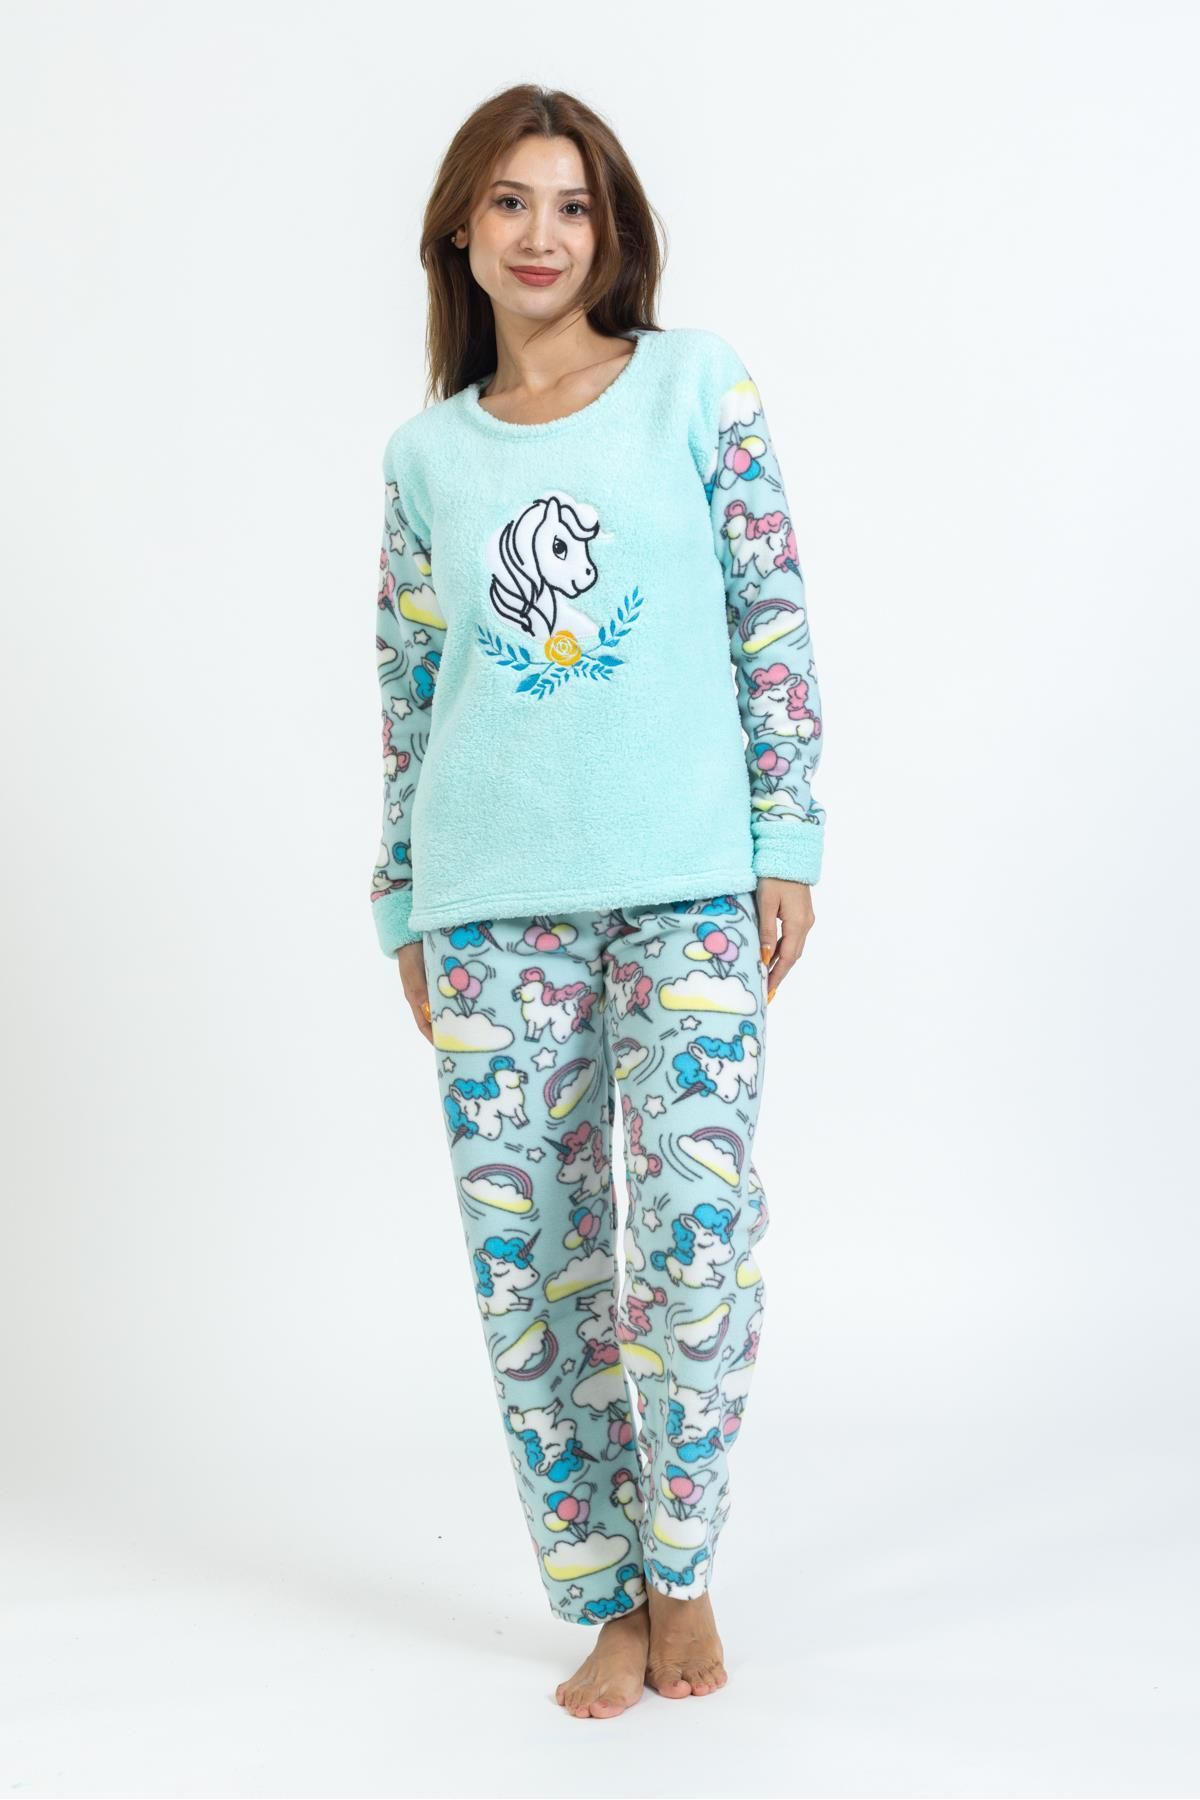 Pemilo Kadın Unicorn Desenli Polar Pijama Takımı TURKUAZ